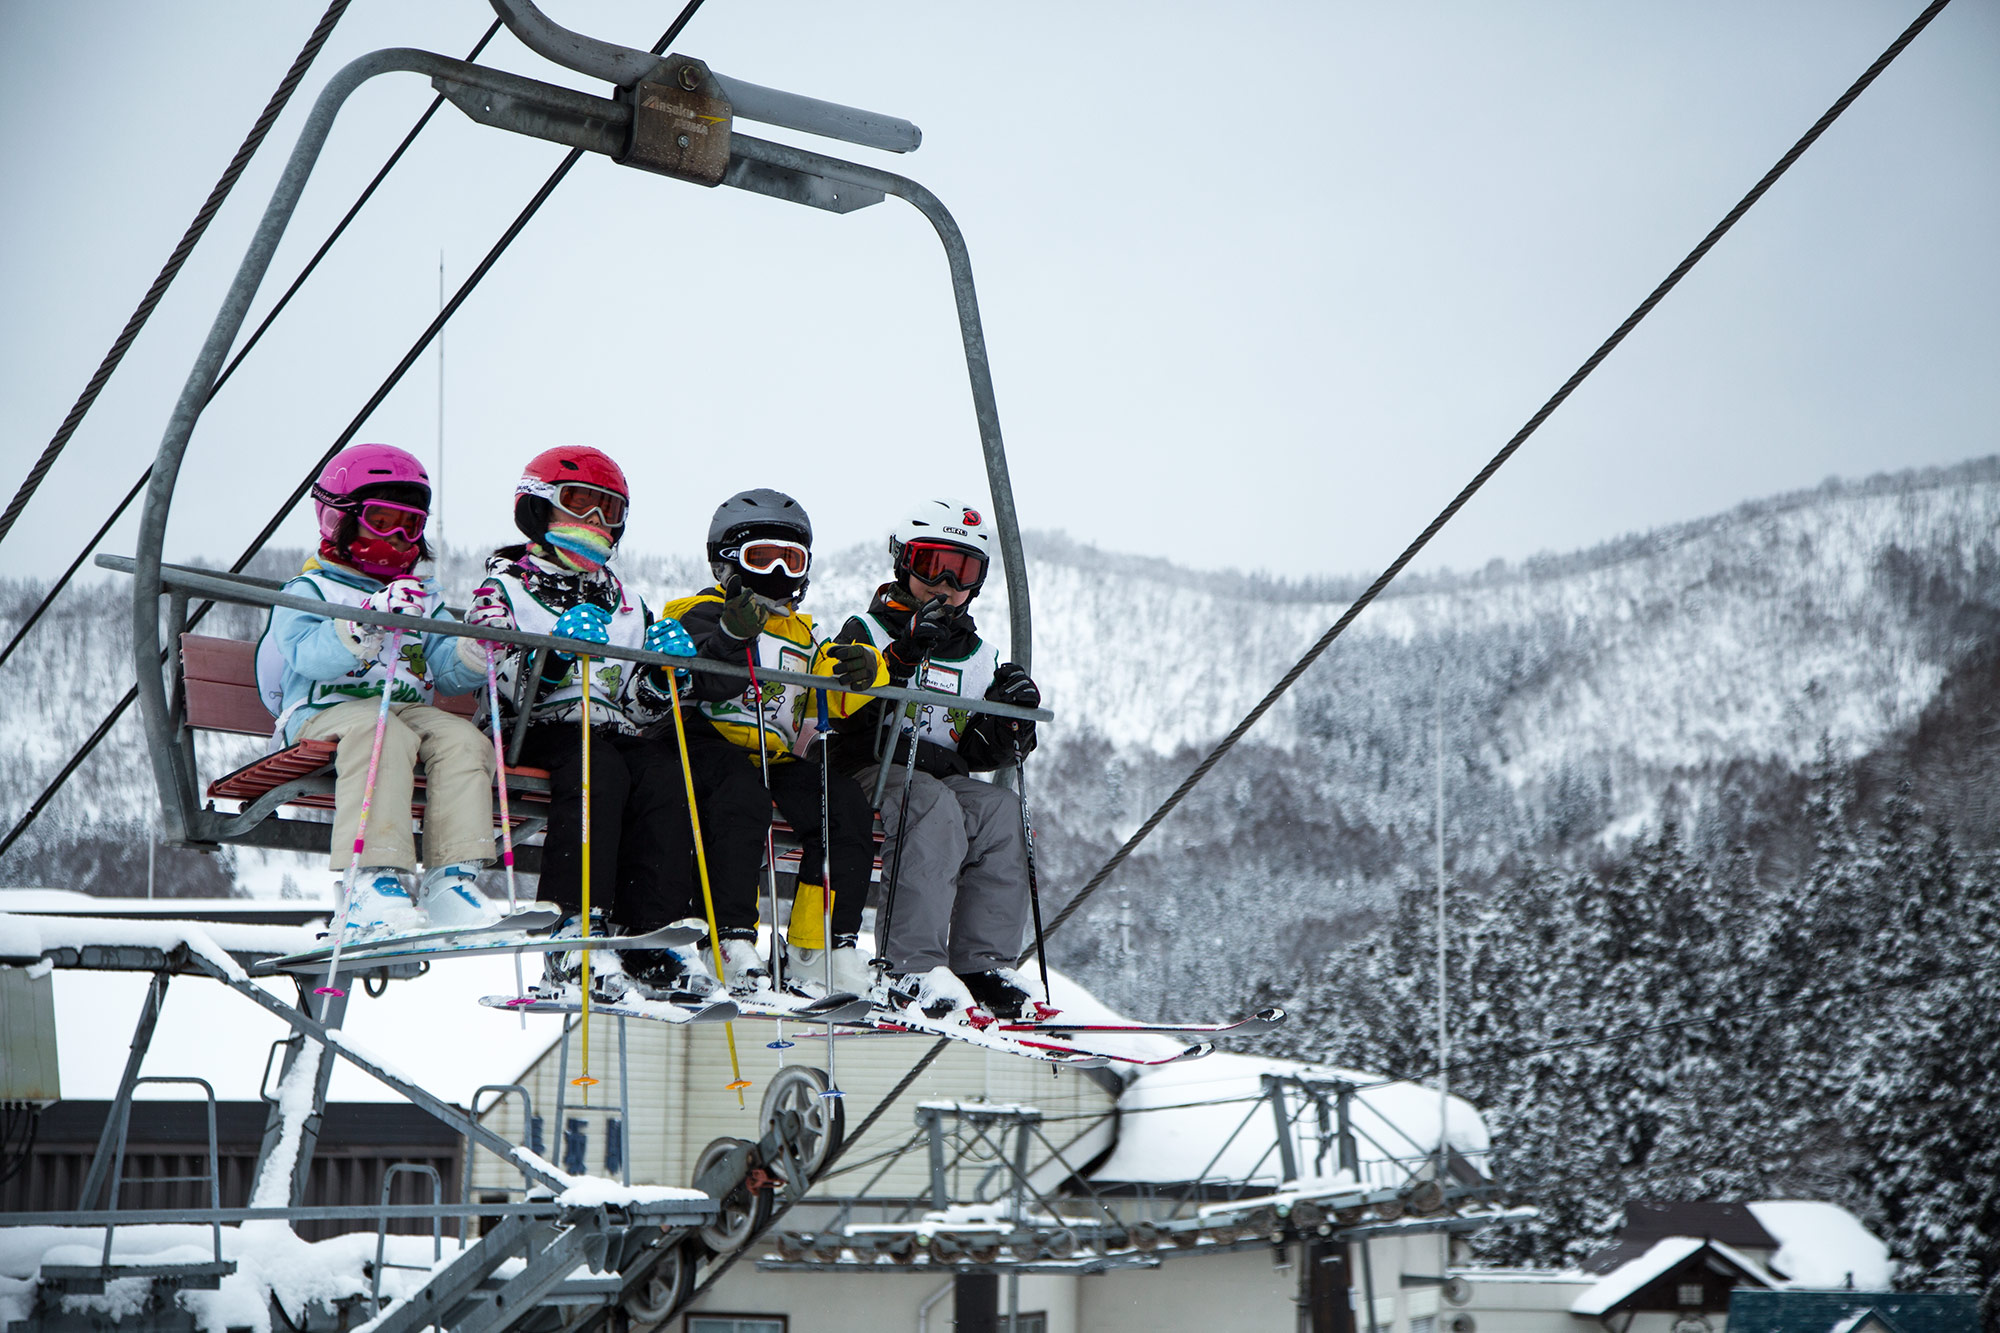  Kids Skiing Nozawa Onsen Japan 